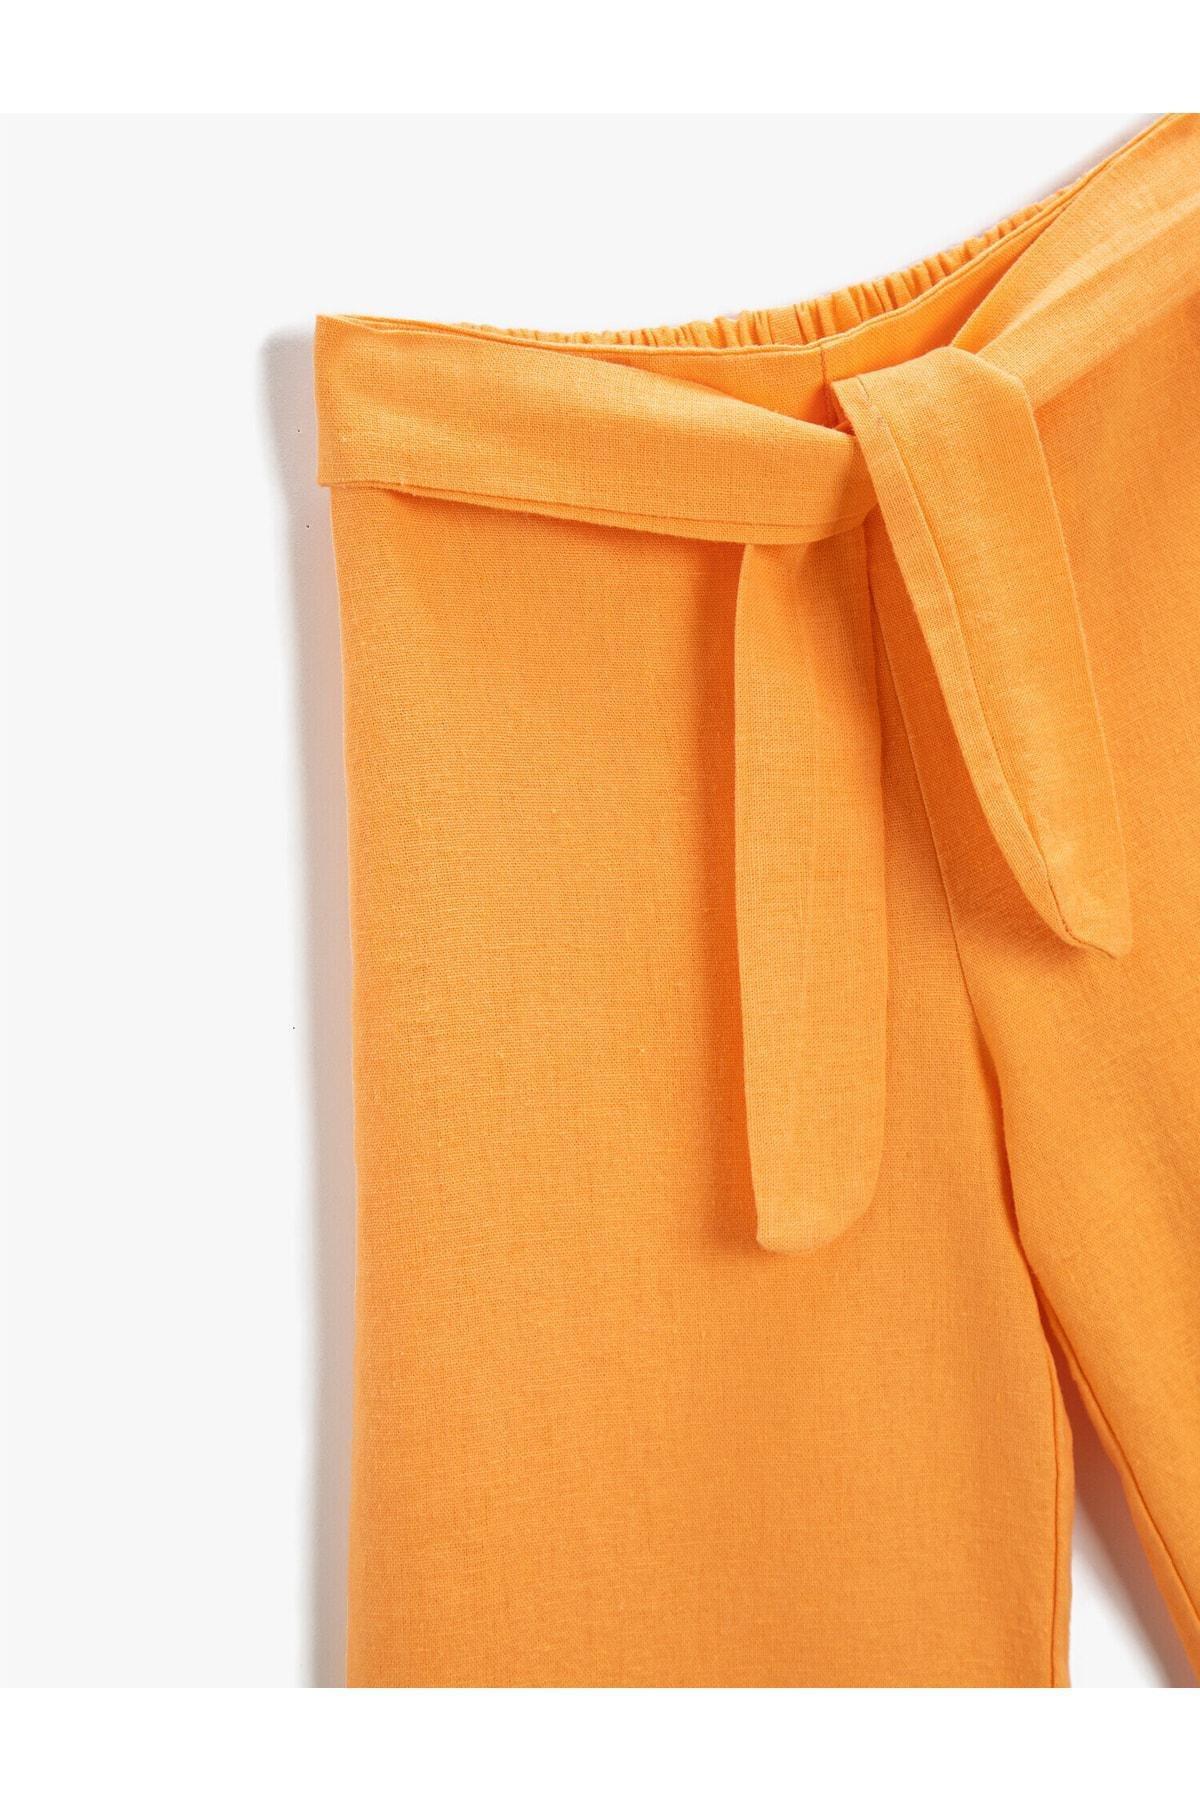 Koton - Orange Belted Trousers, Kids Girls